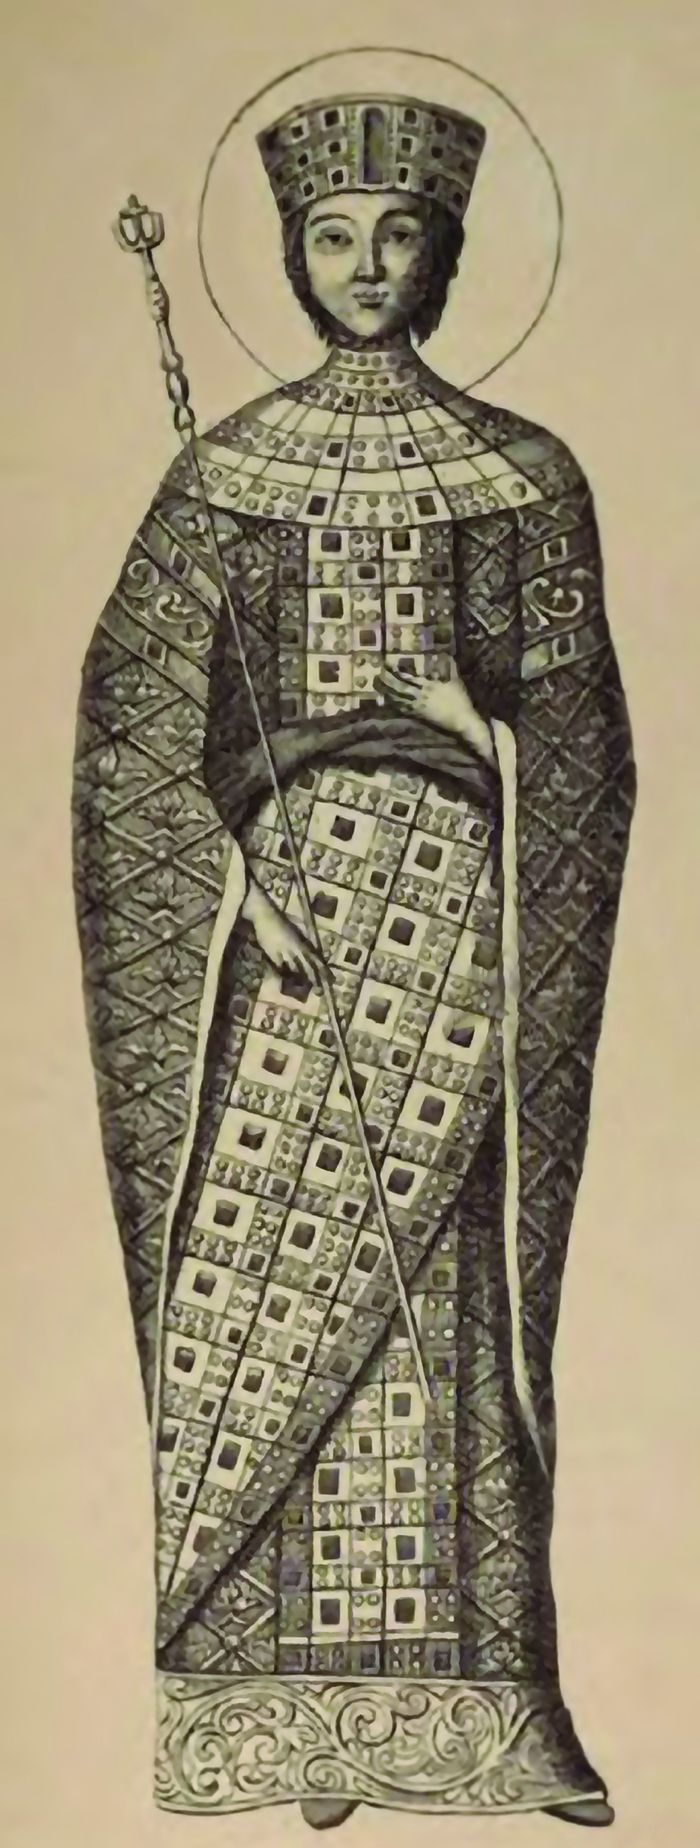 ბაგრატ IV-ის ასული, ბიზანტიის დედოფალი მართა-მარიამი